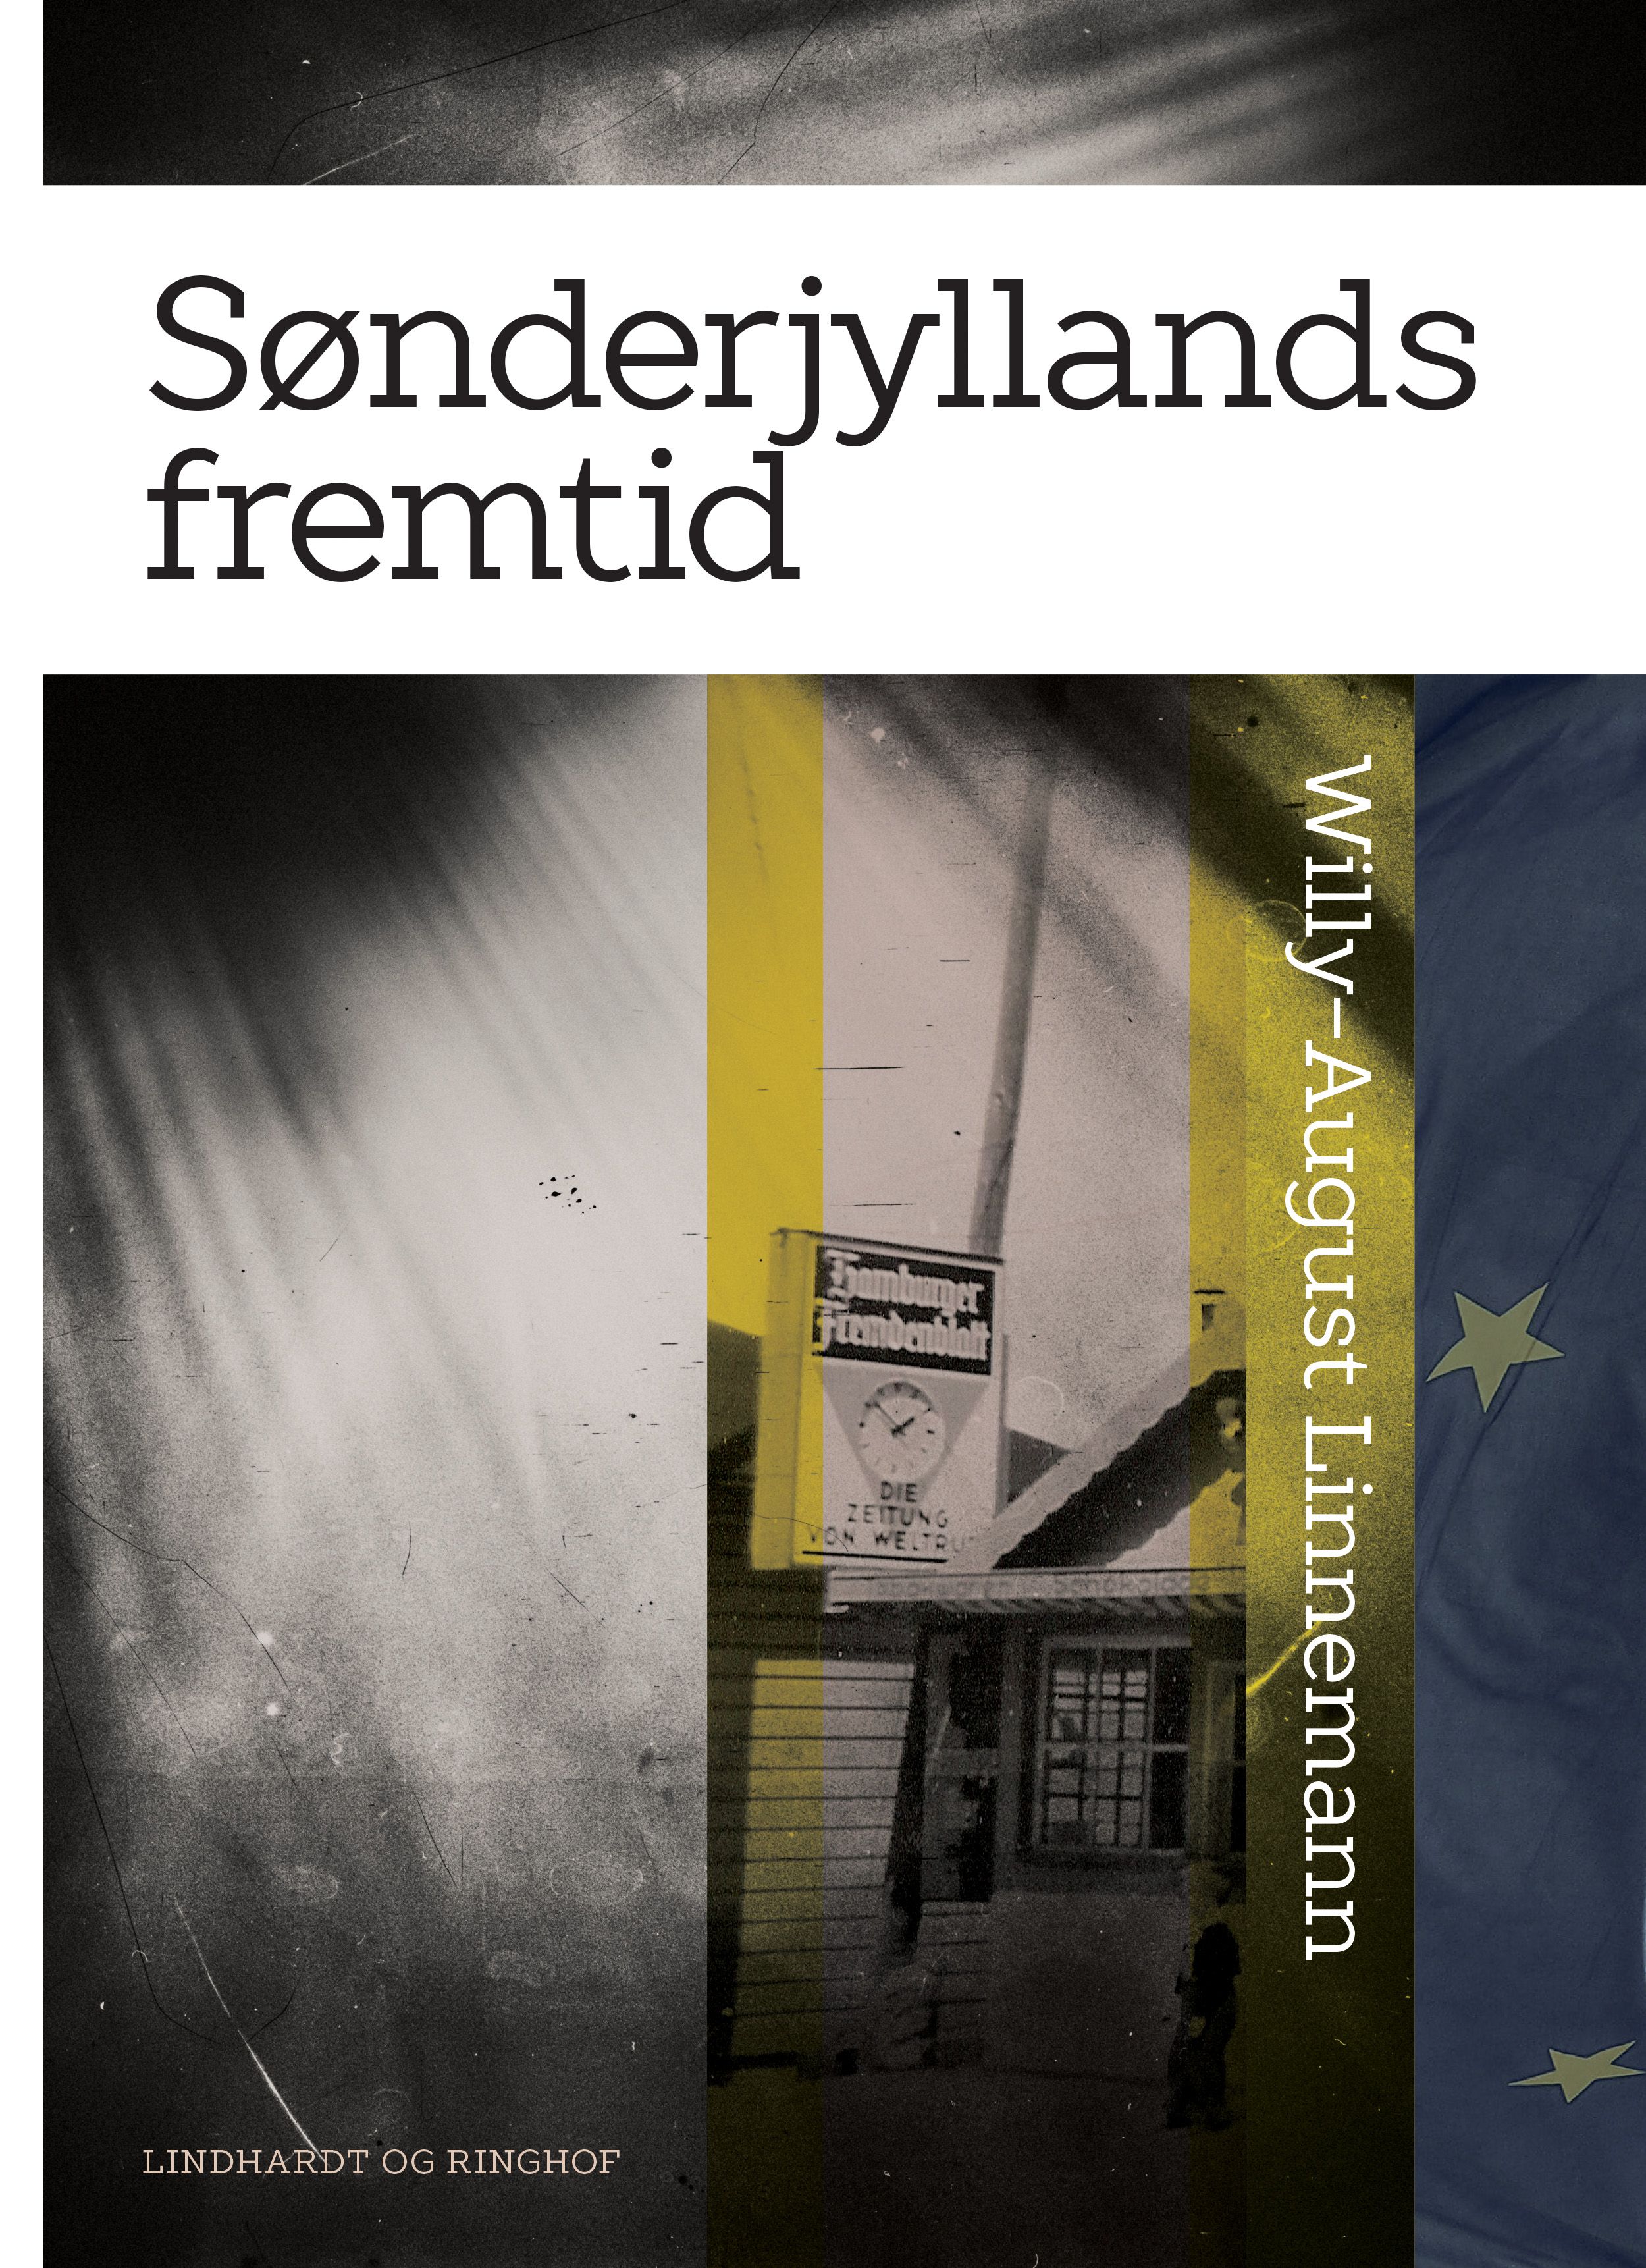 Sønderjyllands fremtid, e-bok av Willy-August Linnemann